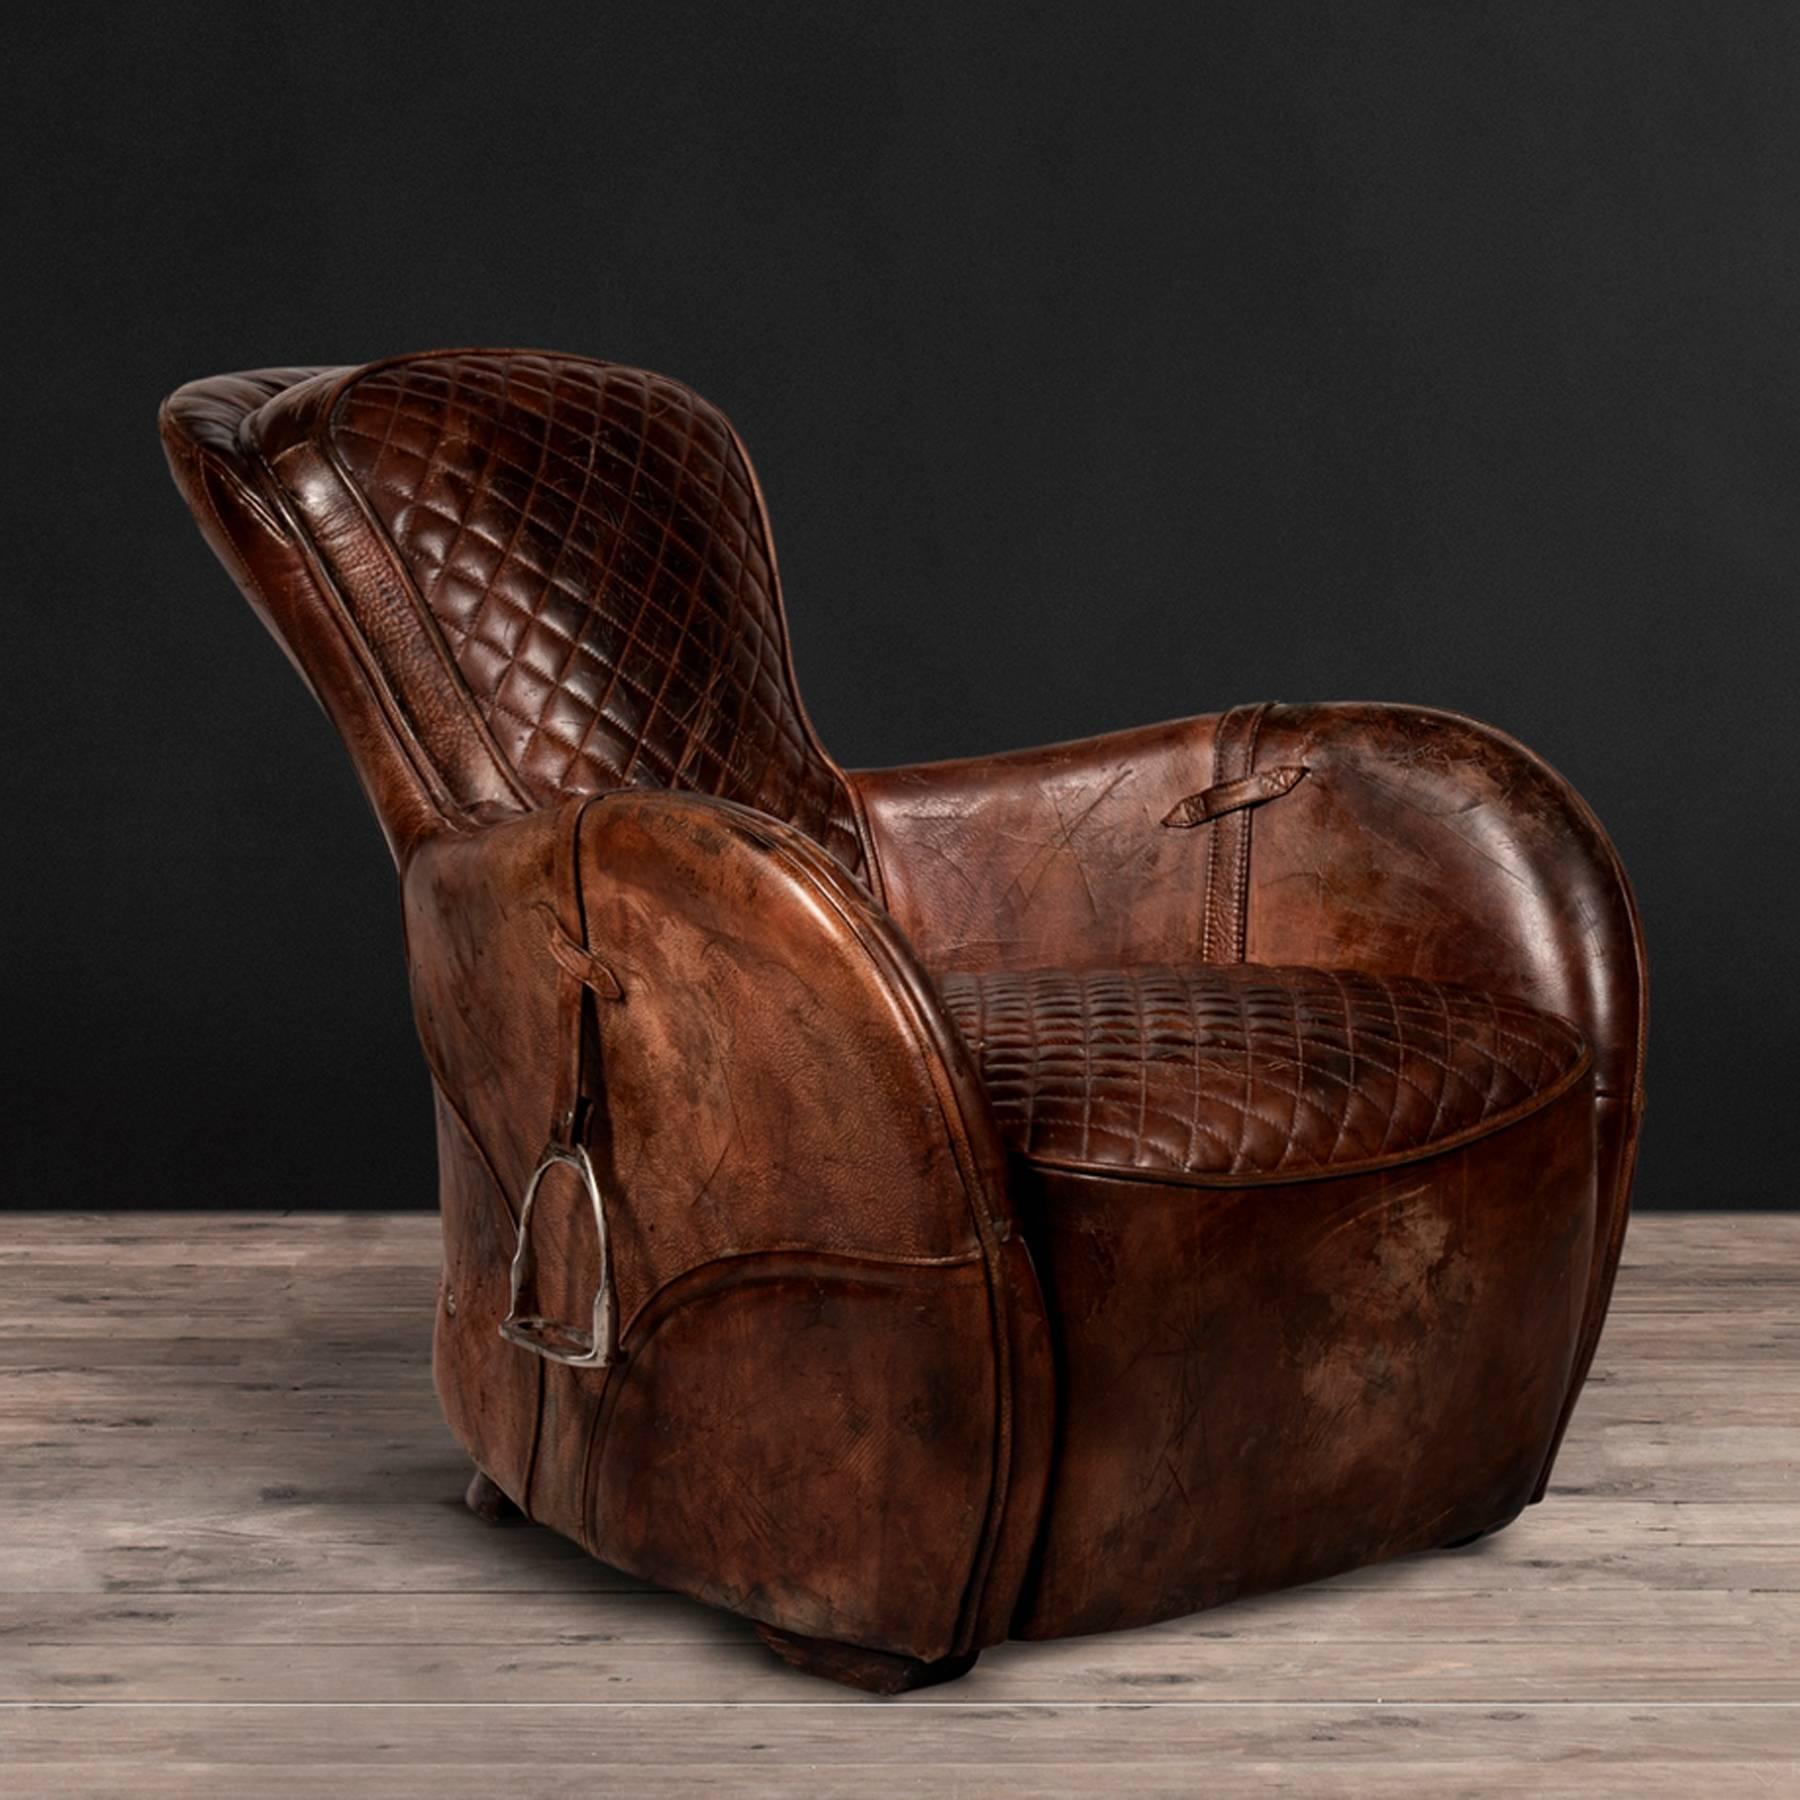 Sessel-Sattel altbraun in 
Vintage Leder braun mit Steigbügeln
und handgearbeitetes Leder.
